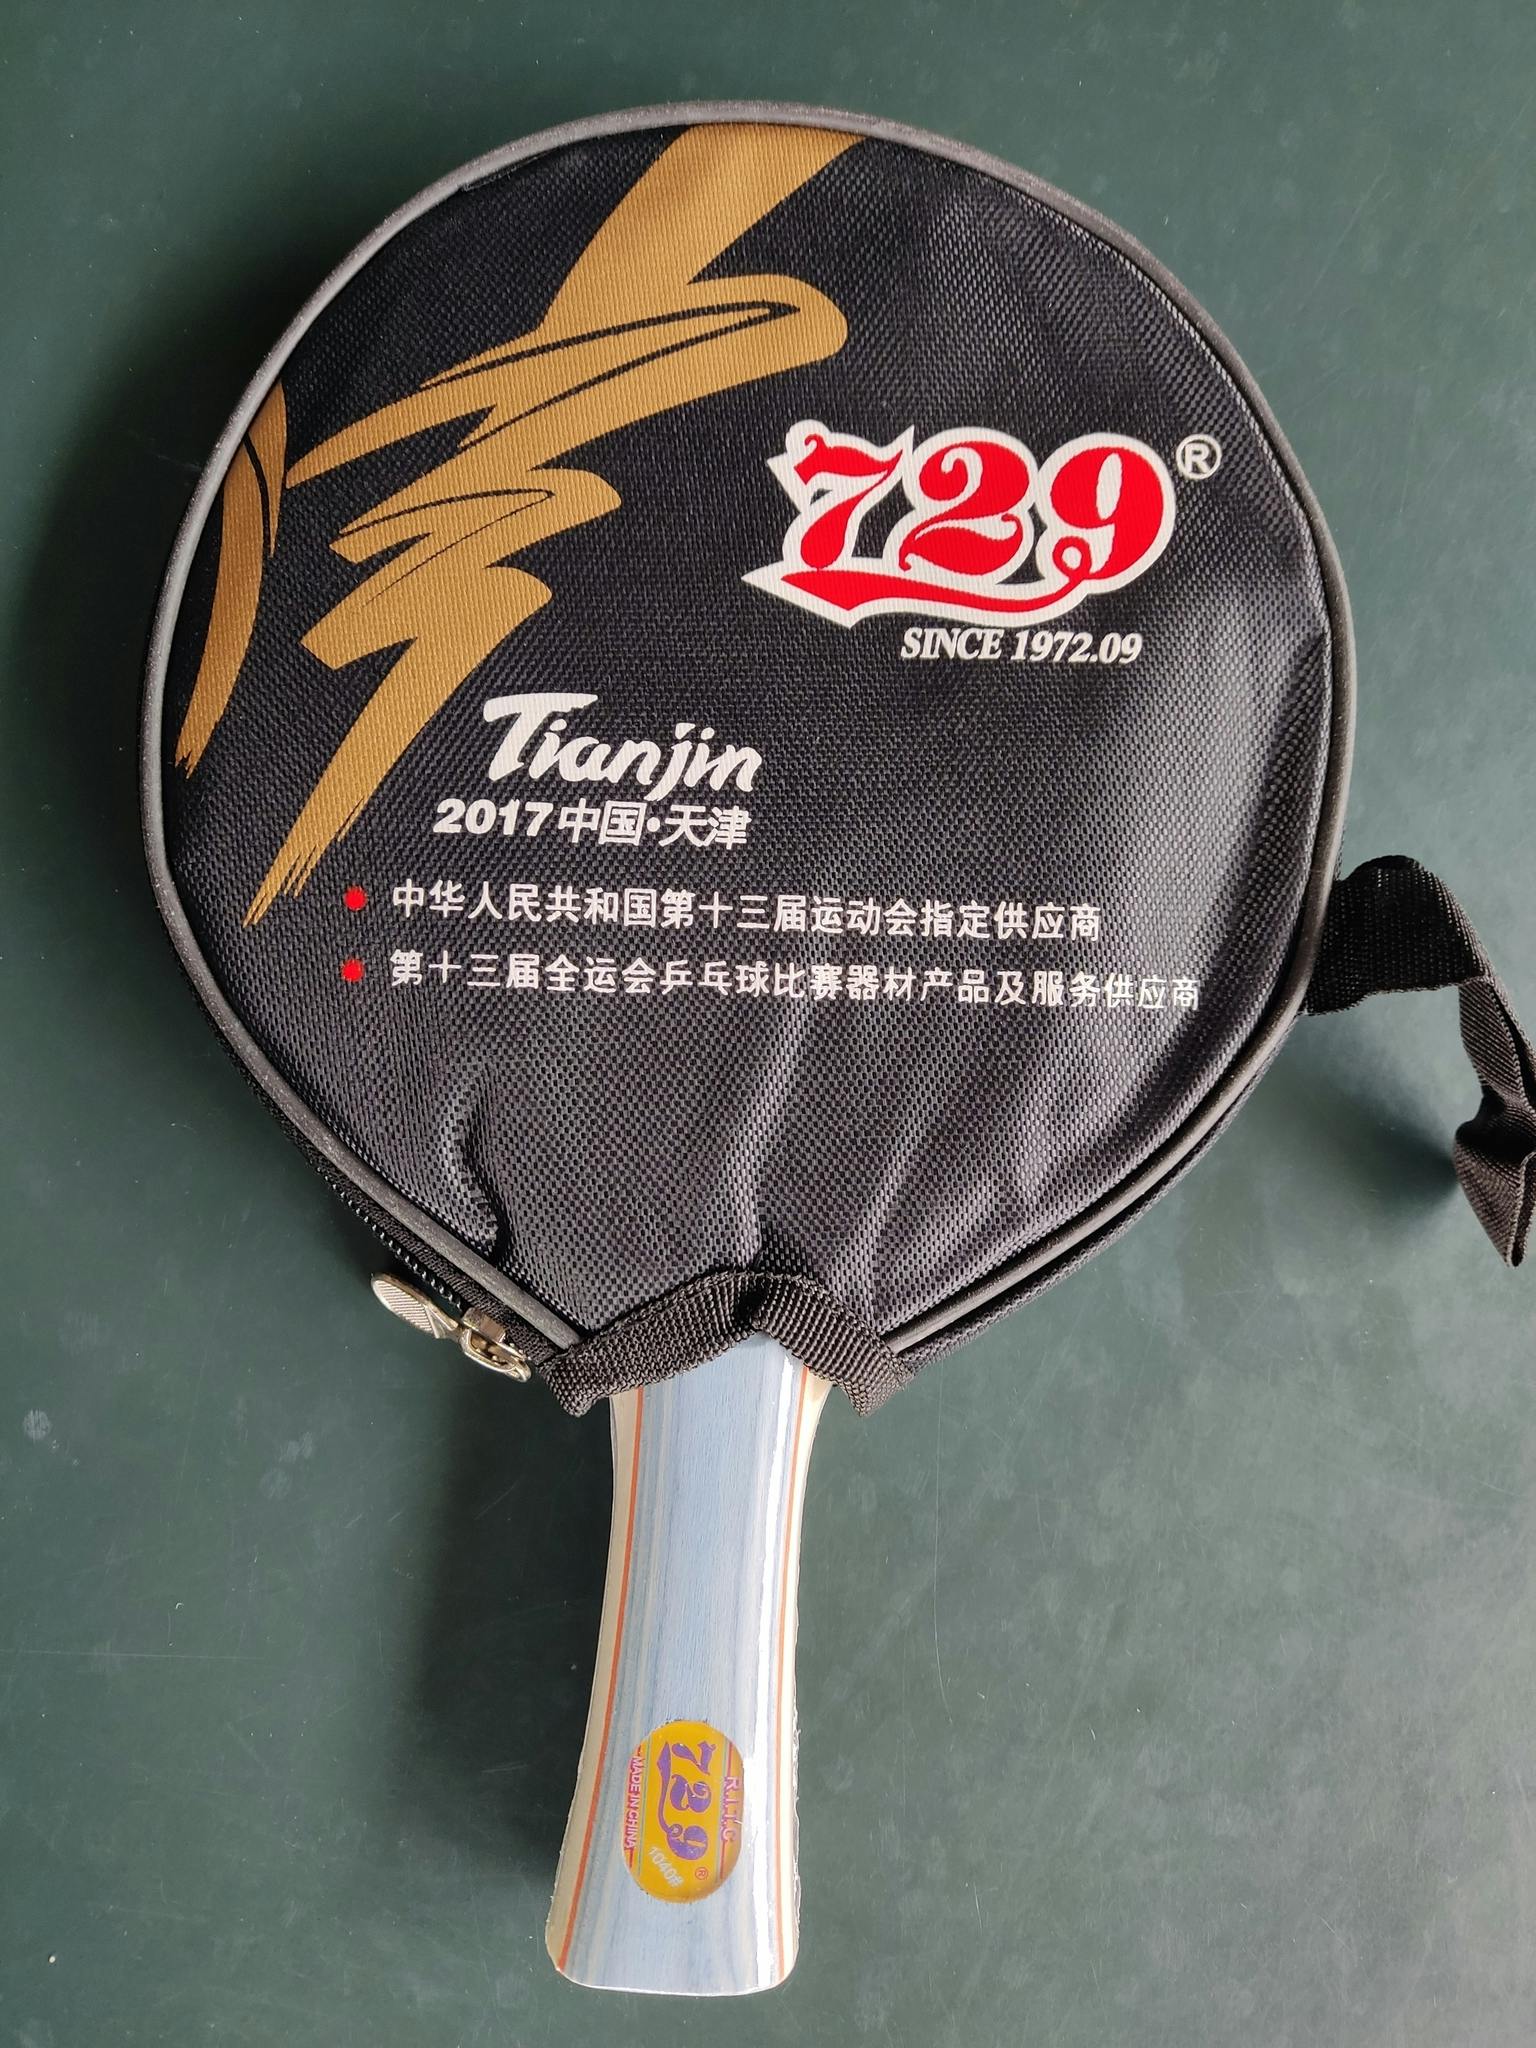 729 - 1040 Racket